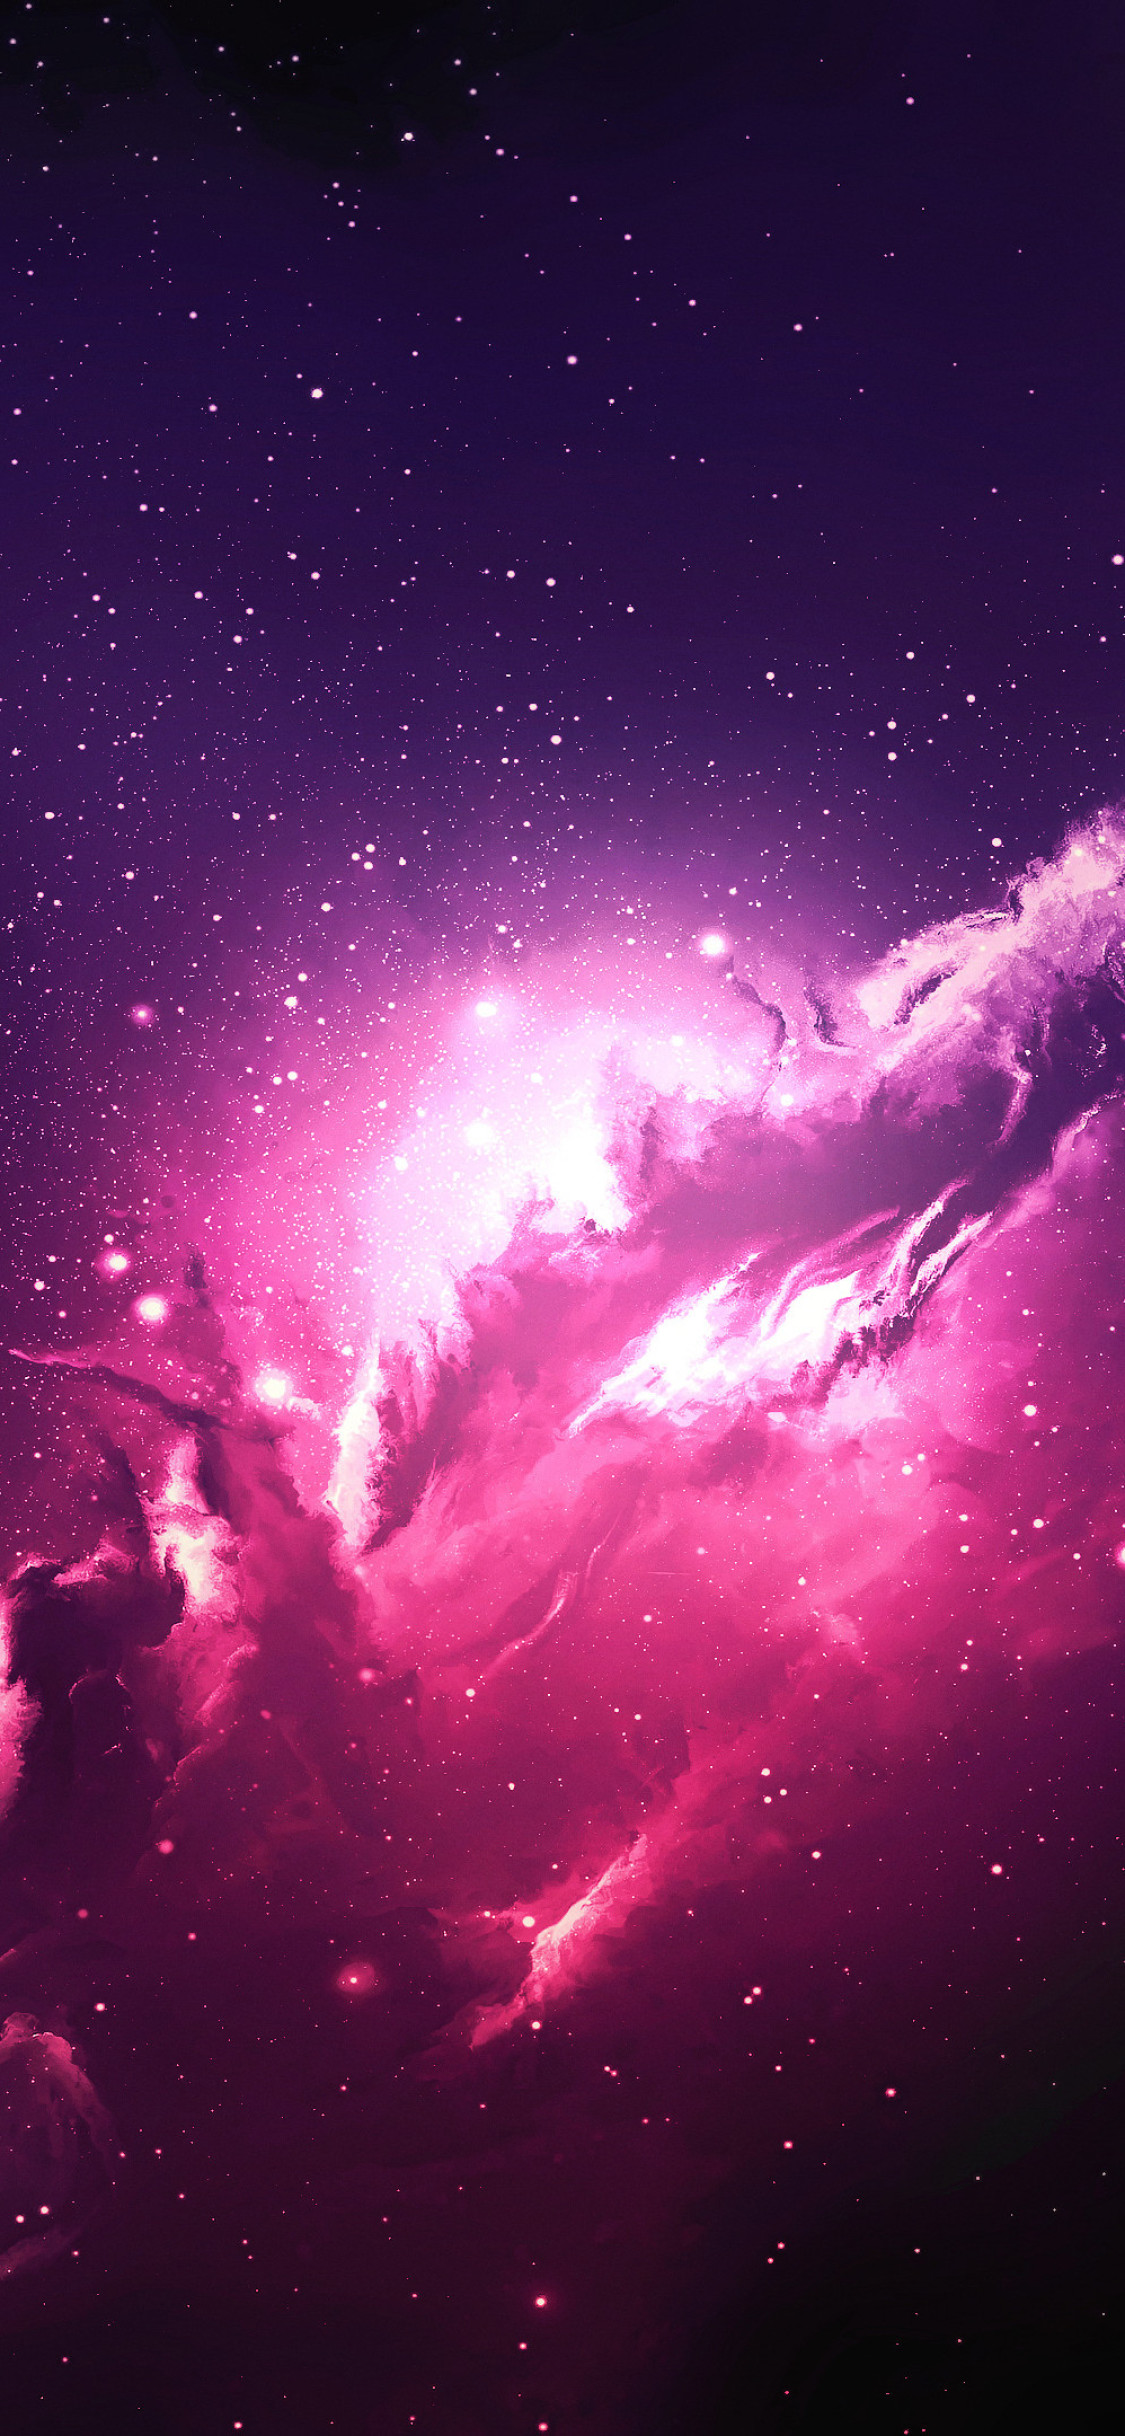 우주 벽지,하늘,분홍,성운,분위기,대기권 밖